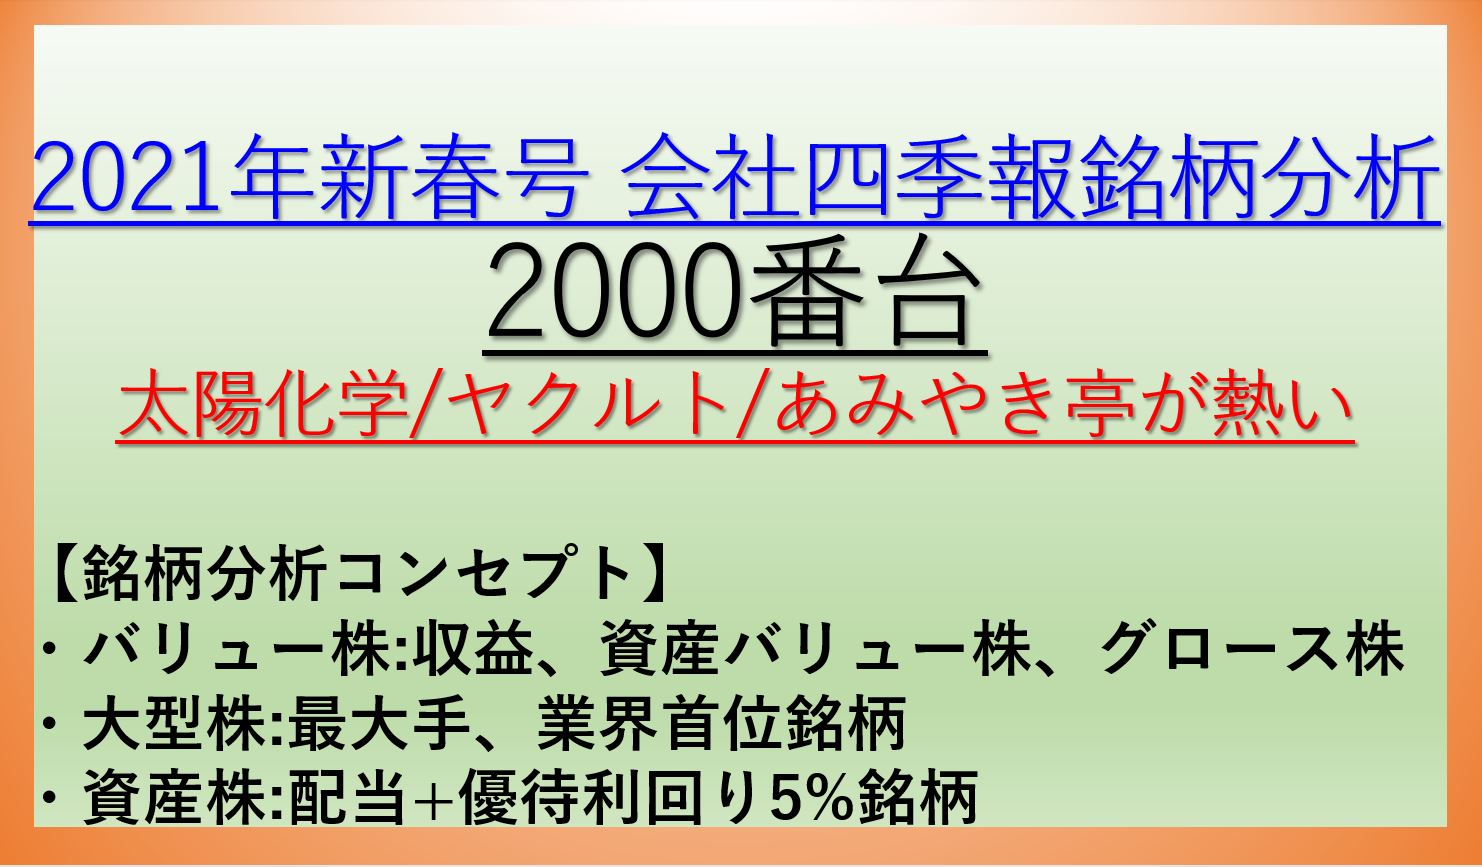 2021年新春号-会社四季報銘柄分析-2000番台